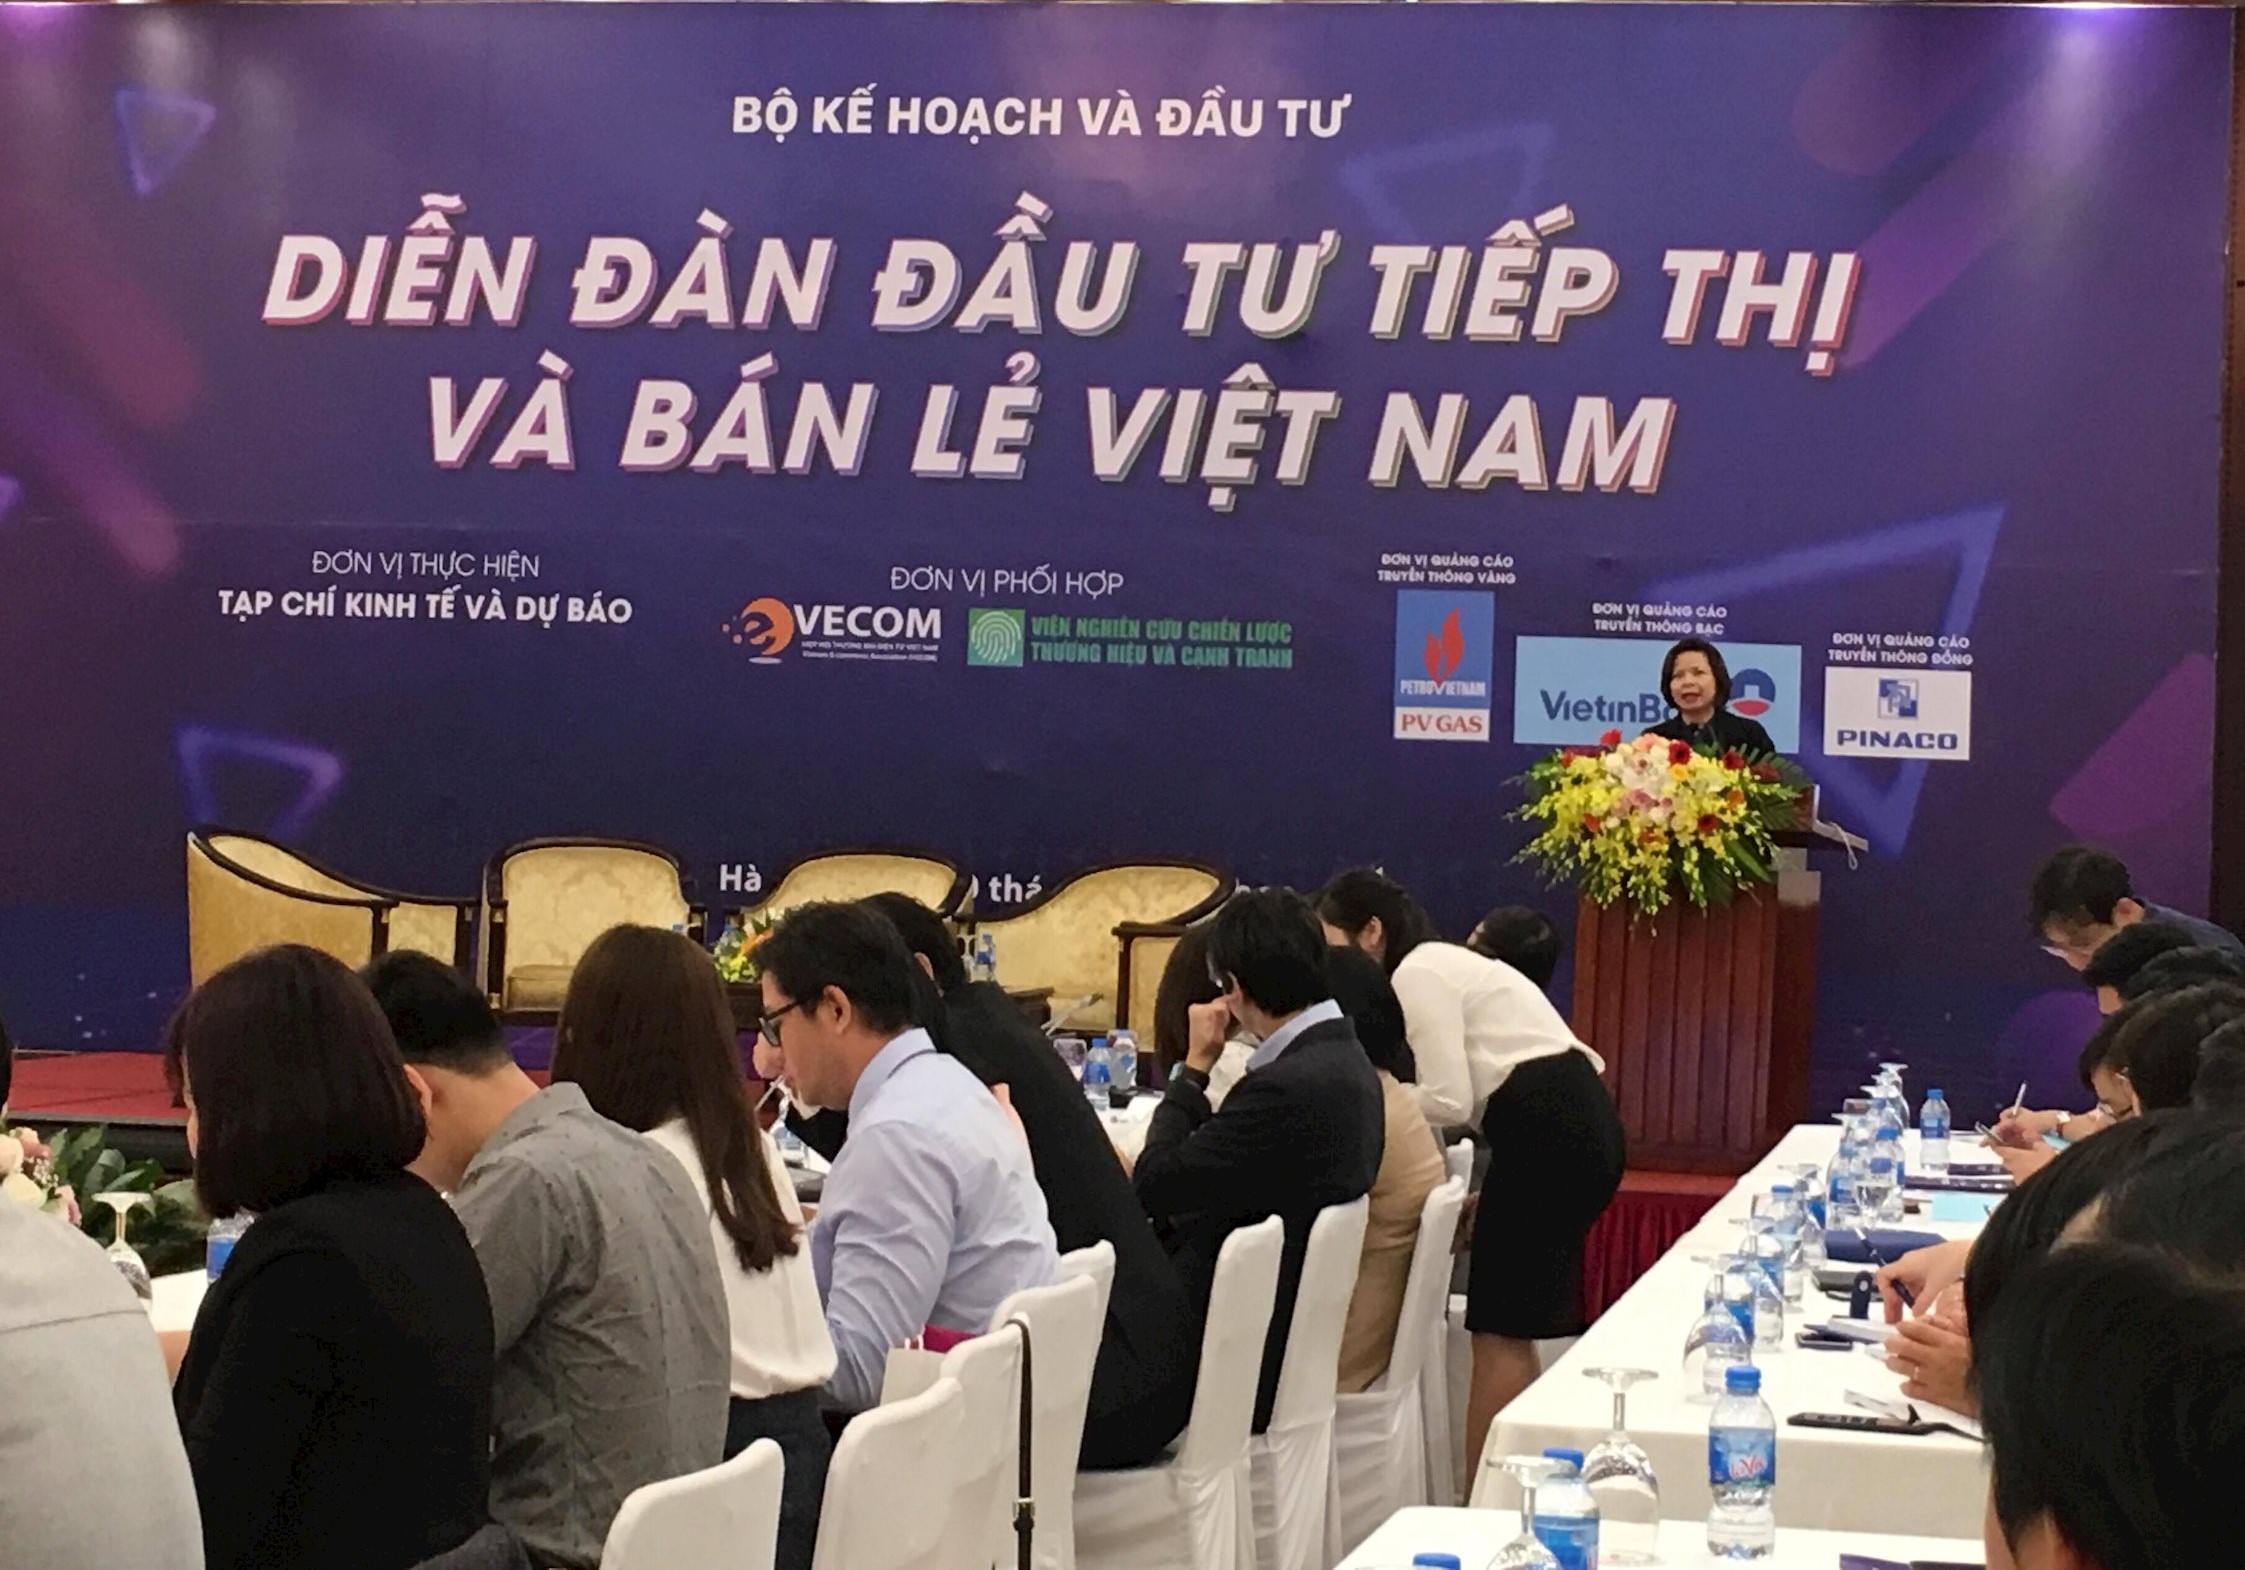 Thị trường bán lẻ Việt Nam hiện còn nhiều hạn chế, bất cập.